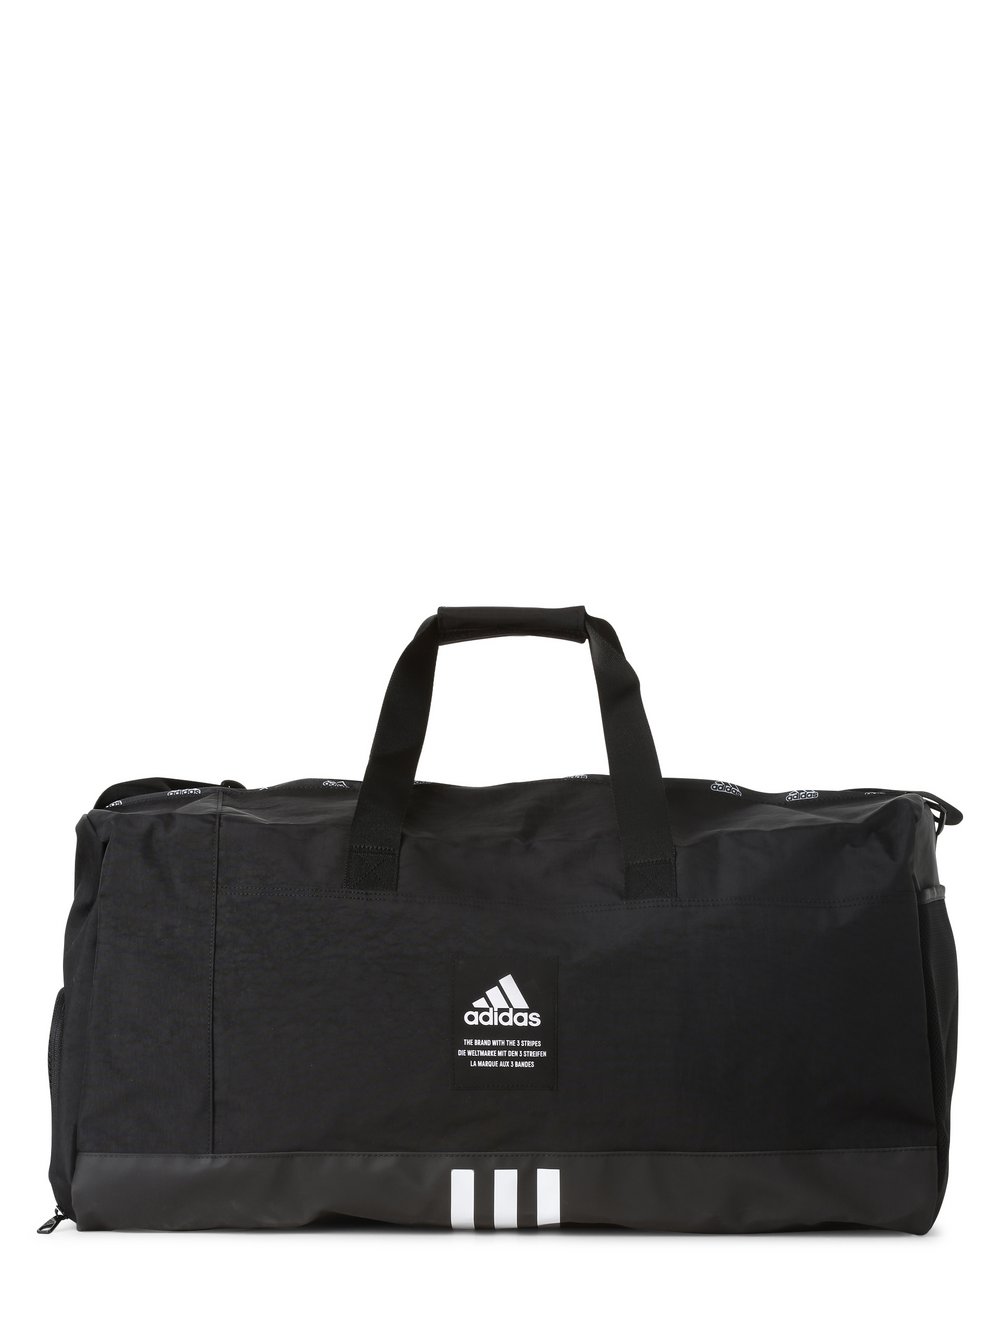 adidas Performance - Męska torba sportowa, czarny